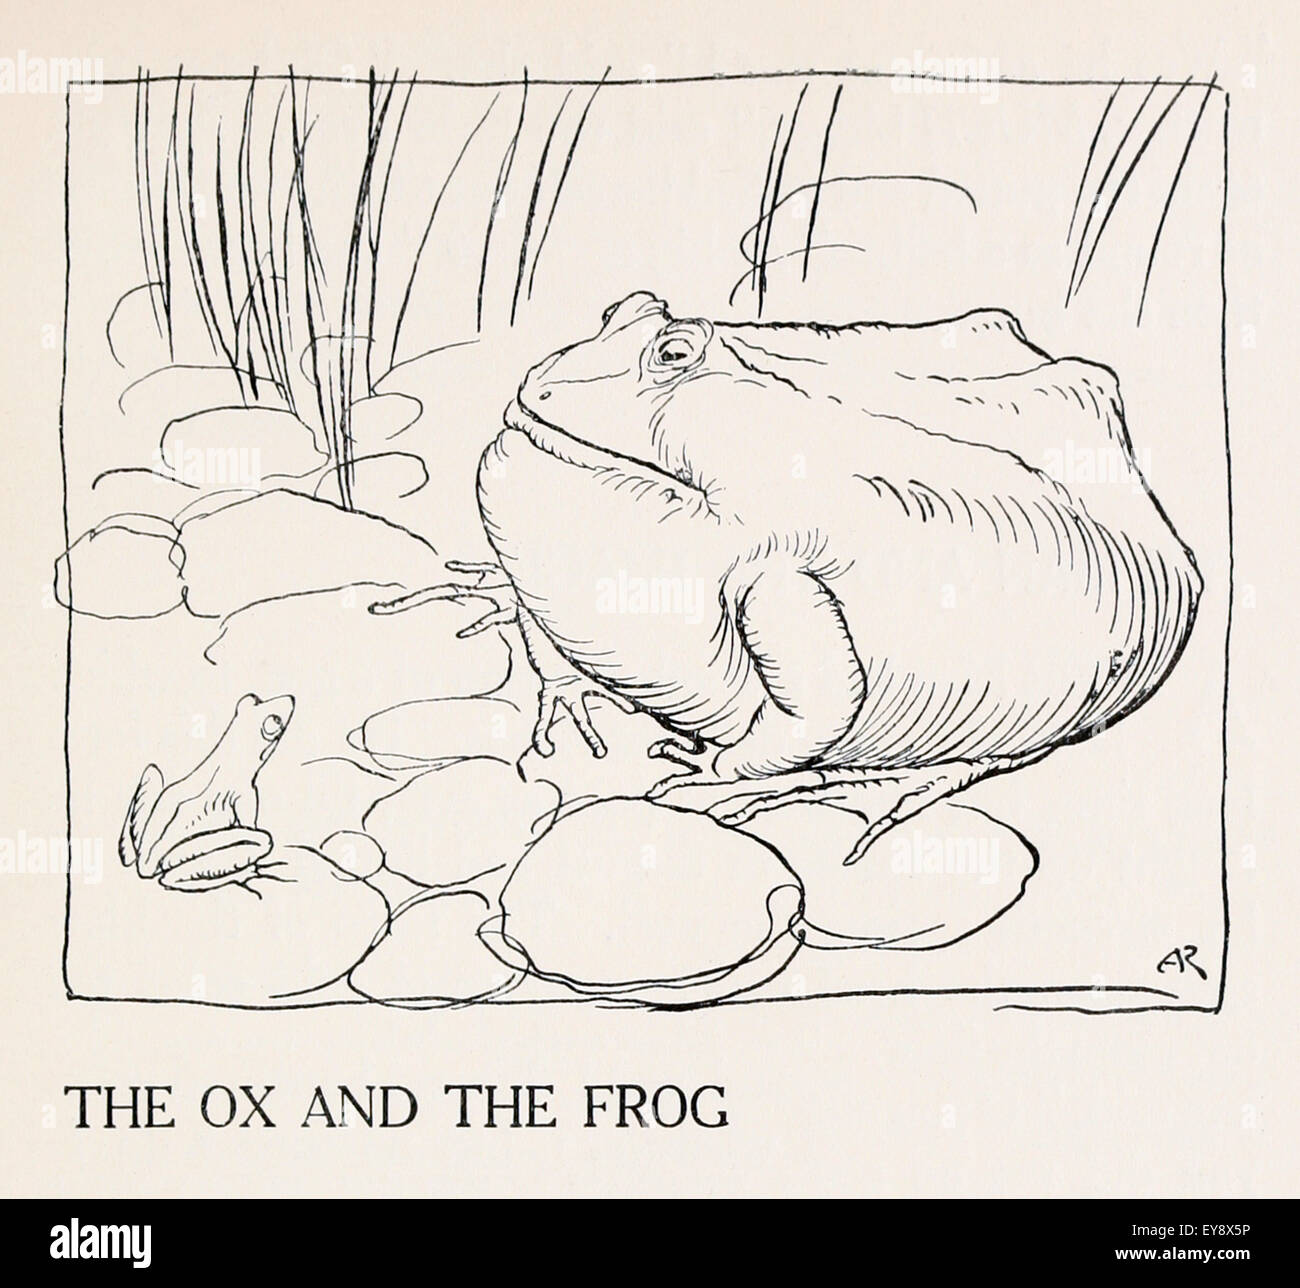 Der Frosch und der Ochse" Fabel von Aesop (ca. 600). Ein Frosch versucht,  sich auf die Größe eines Ochsen aufblasen, aber stürzt bei dem Versuch.  Einbildung kann zur Selbstzerstörung führen. ICHIllustration von